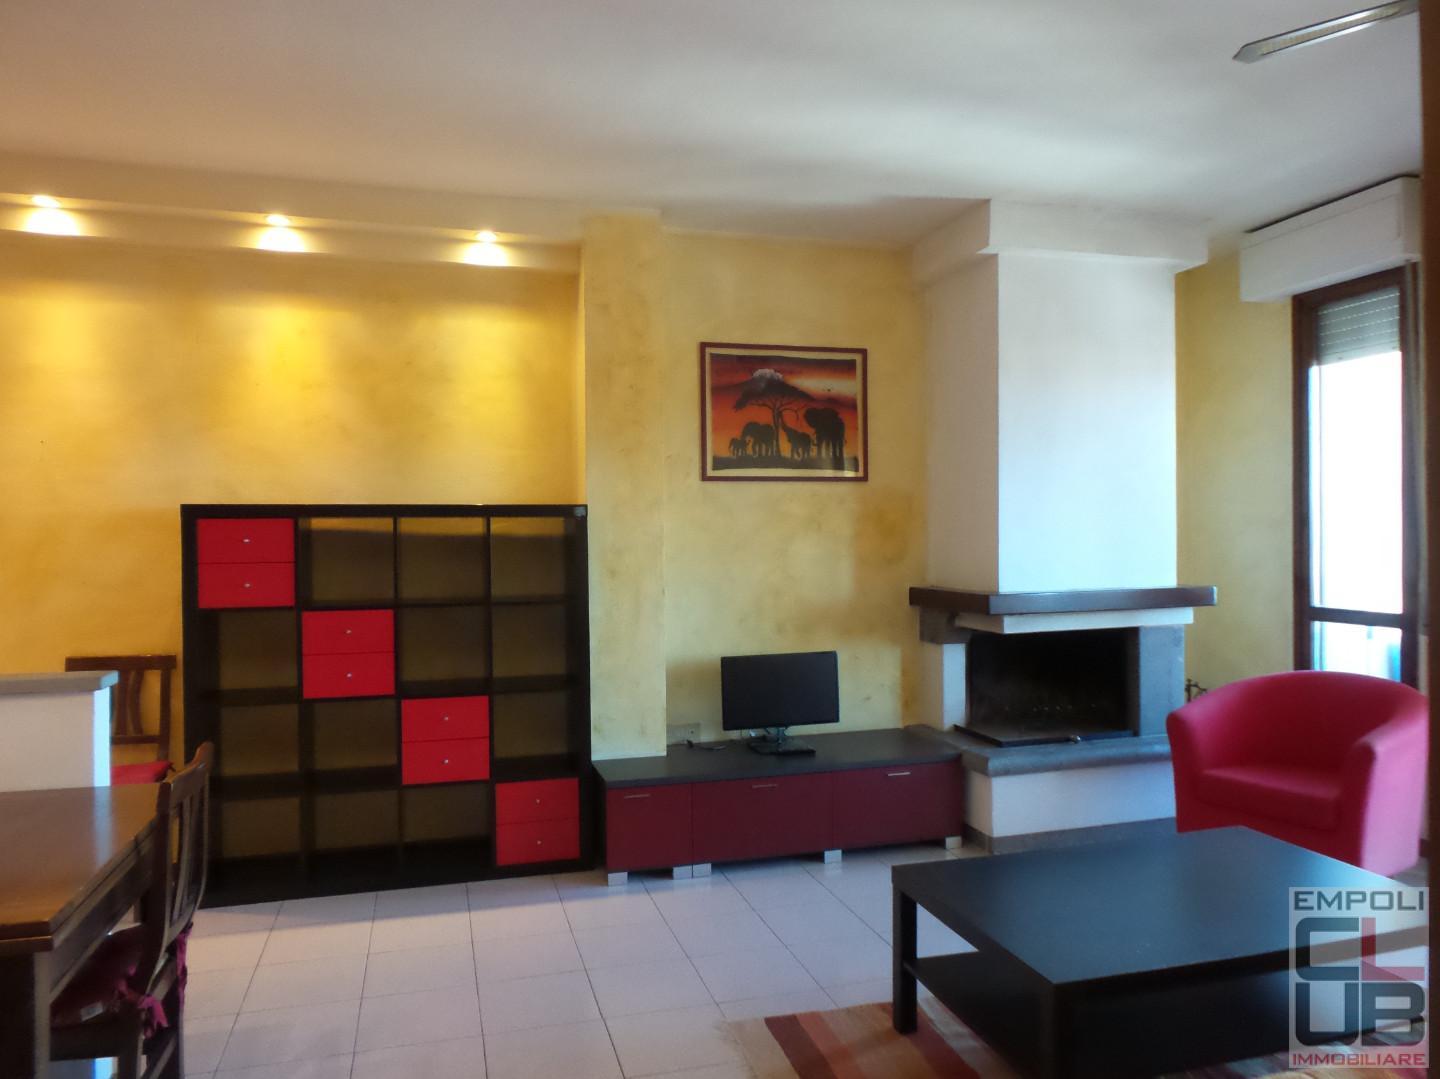 Apartment for sale in Empoli (FI)